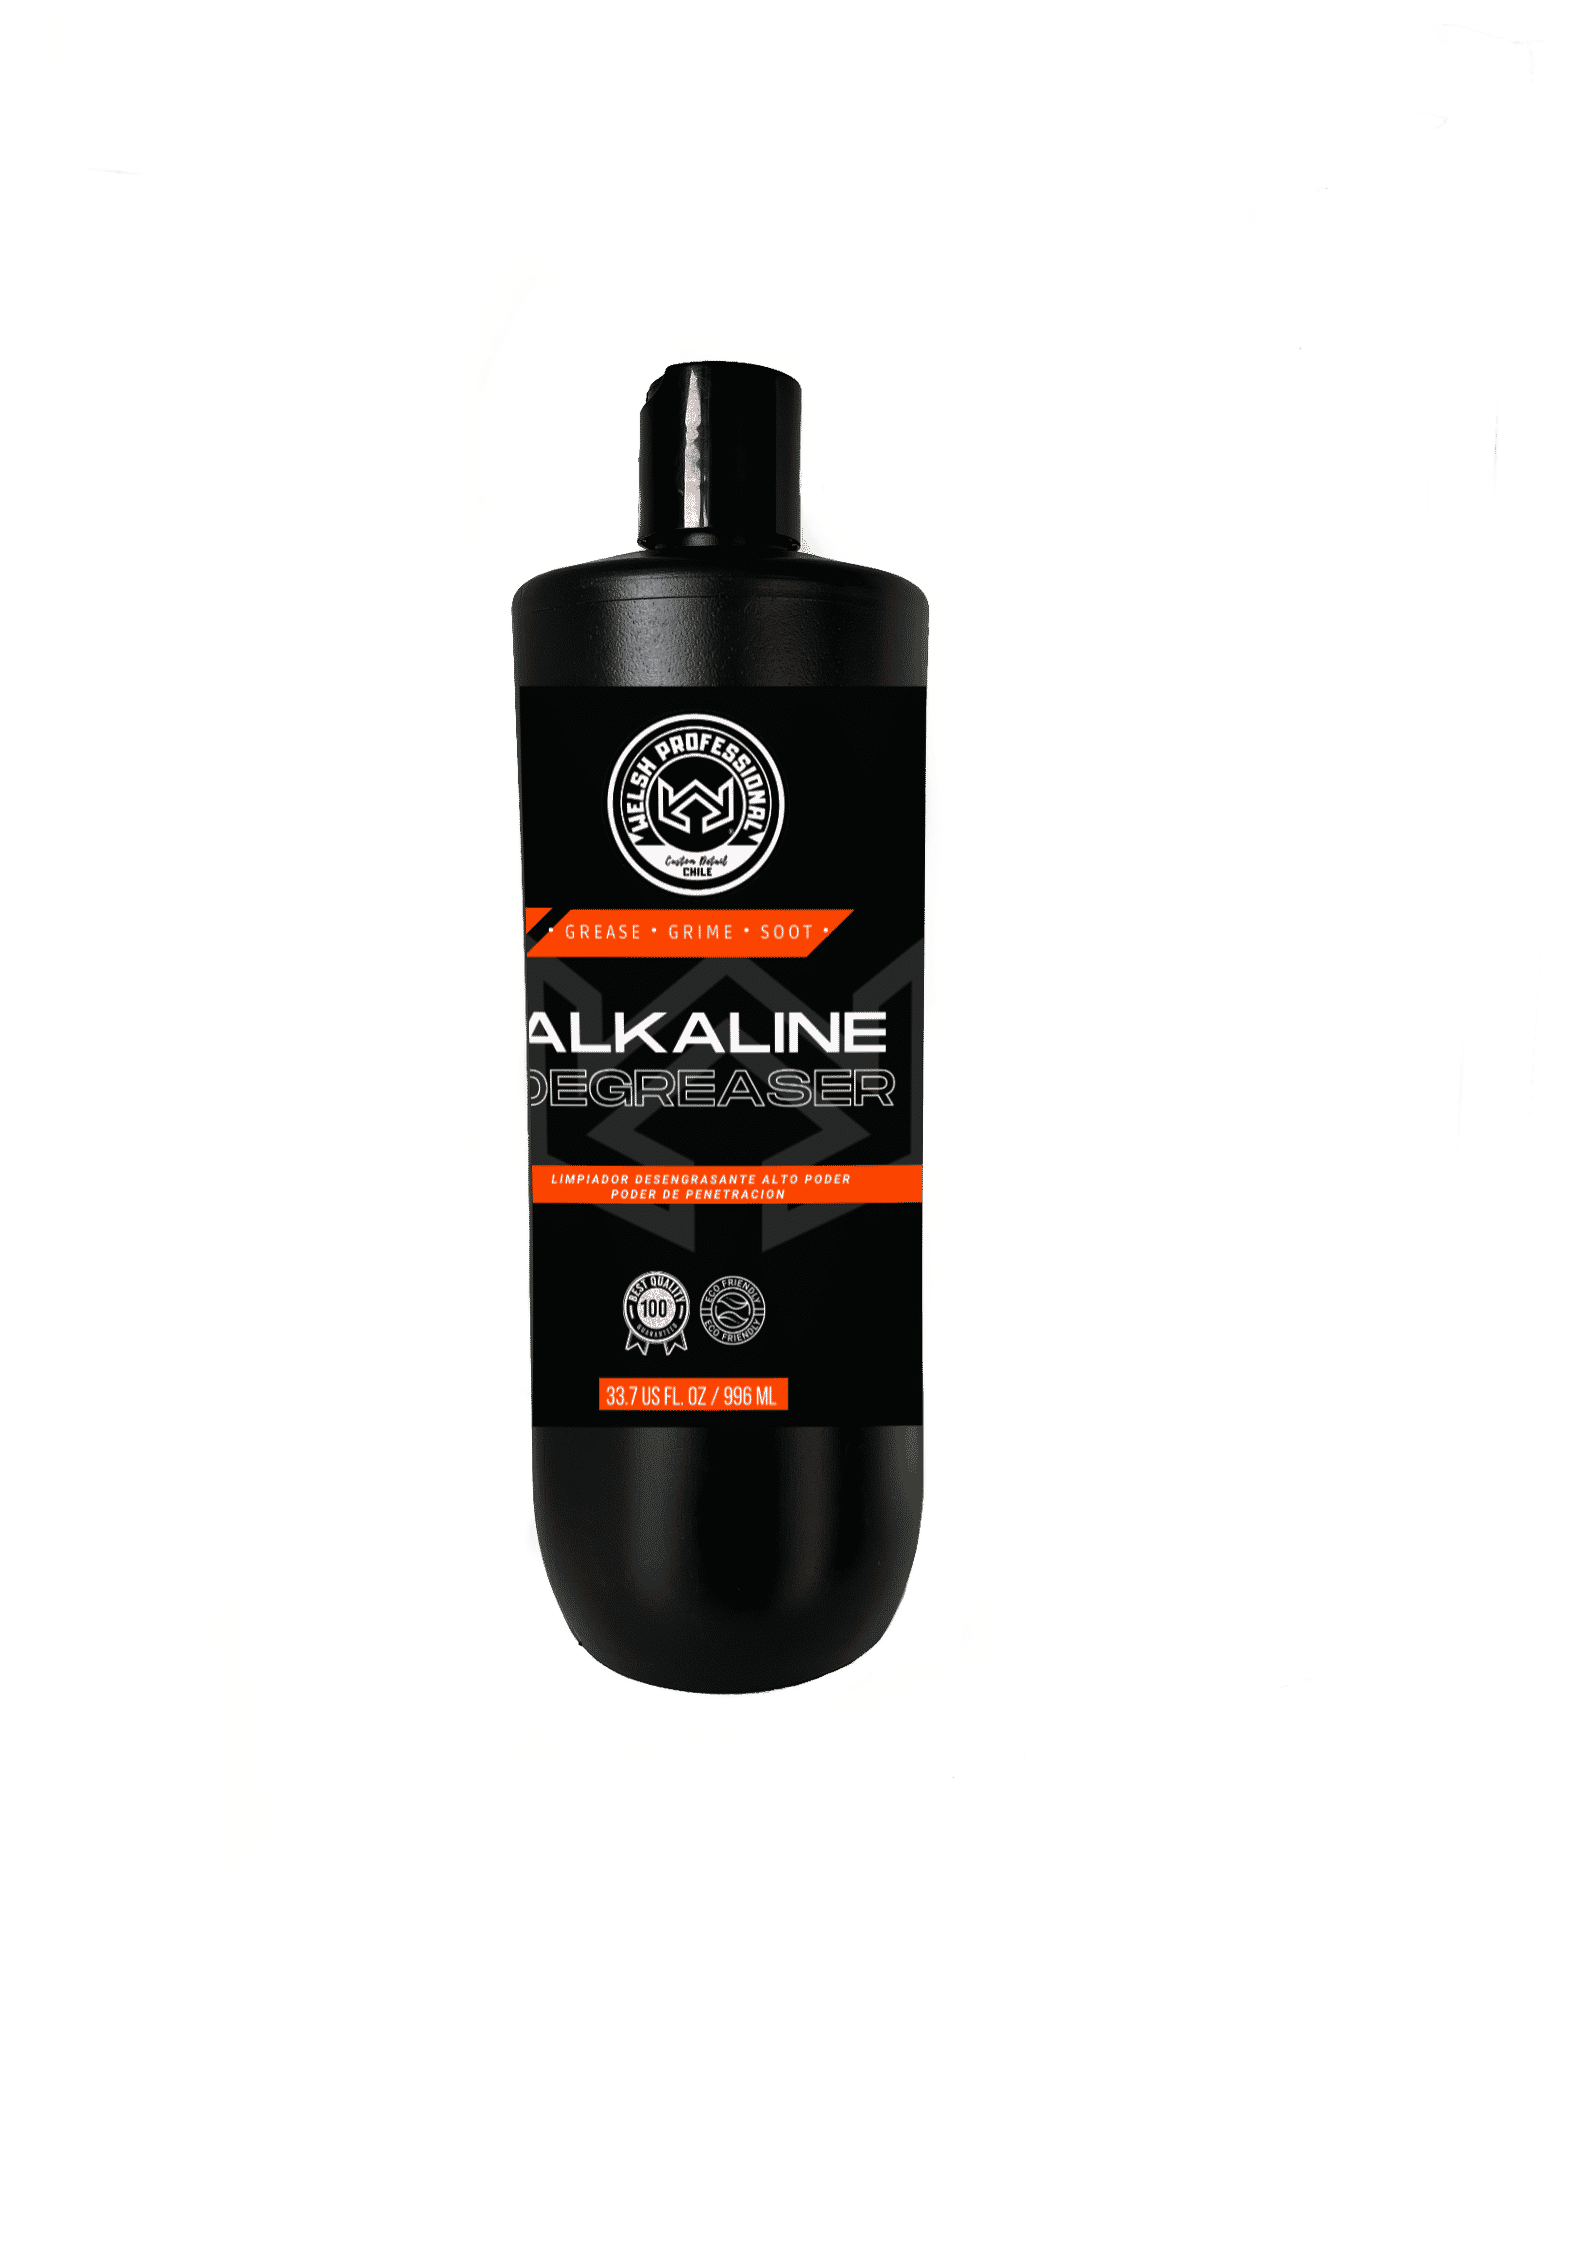 Limpiador de Acero Inoxidable Botella 1L – Quimica Welsh